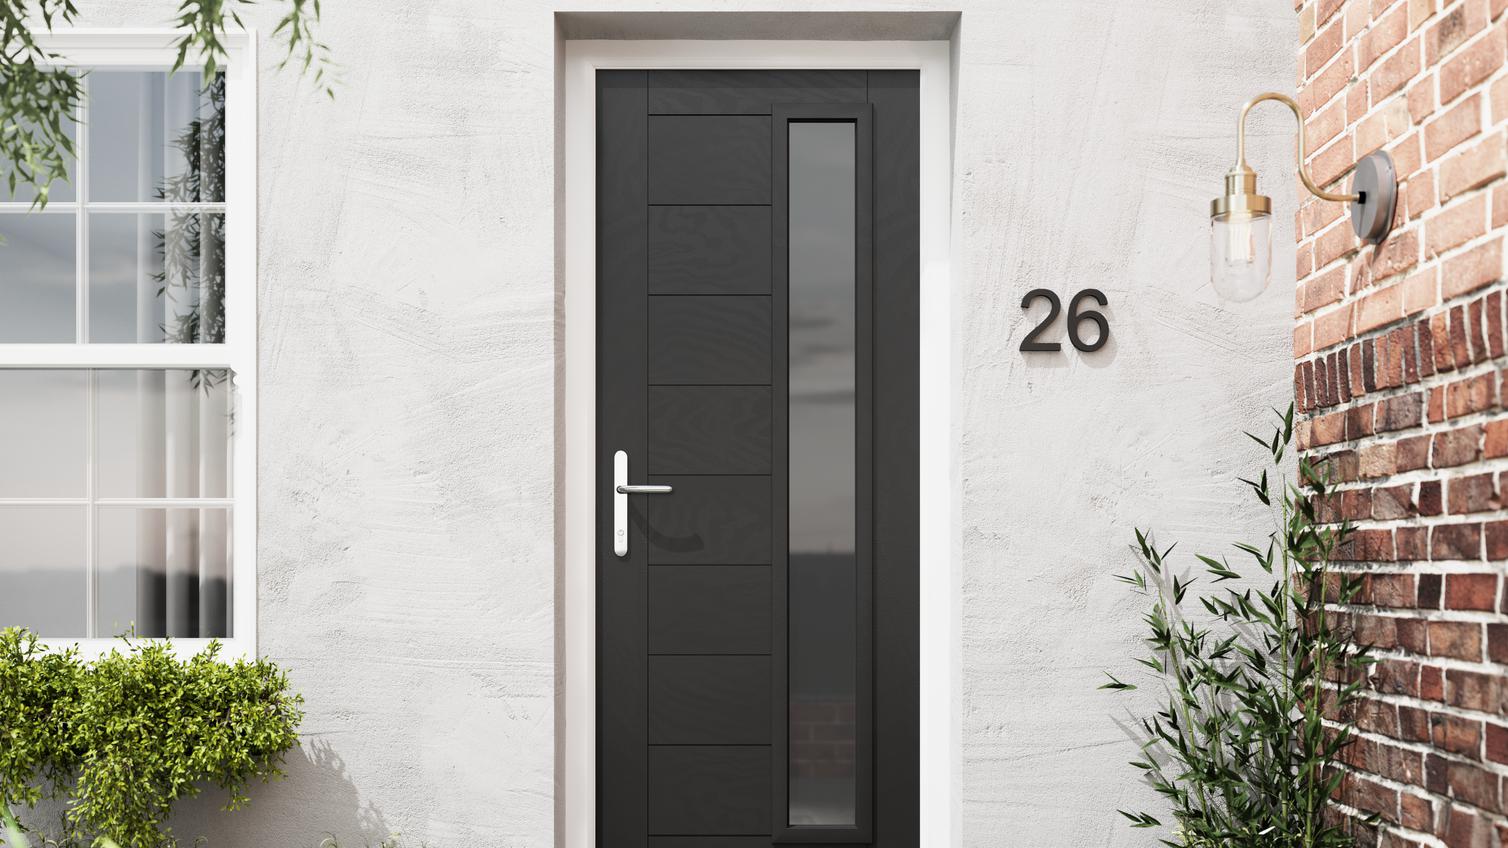 Monza glazed black composite door